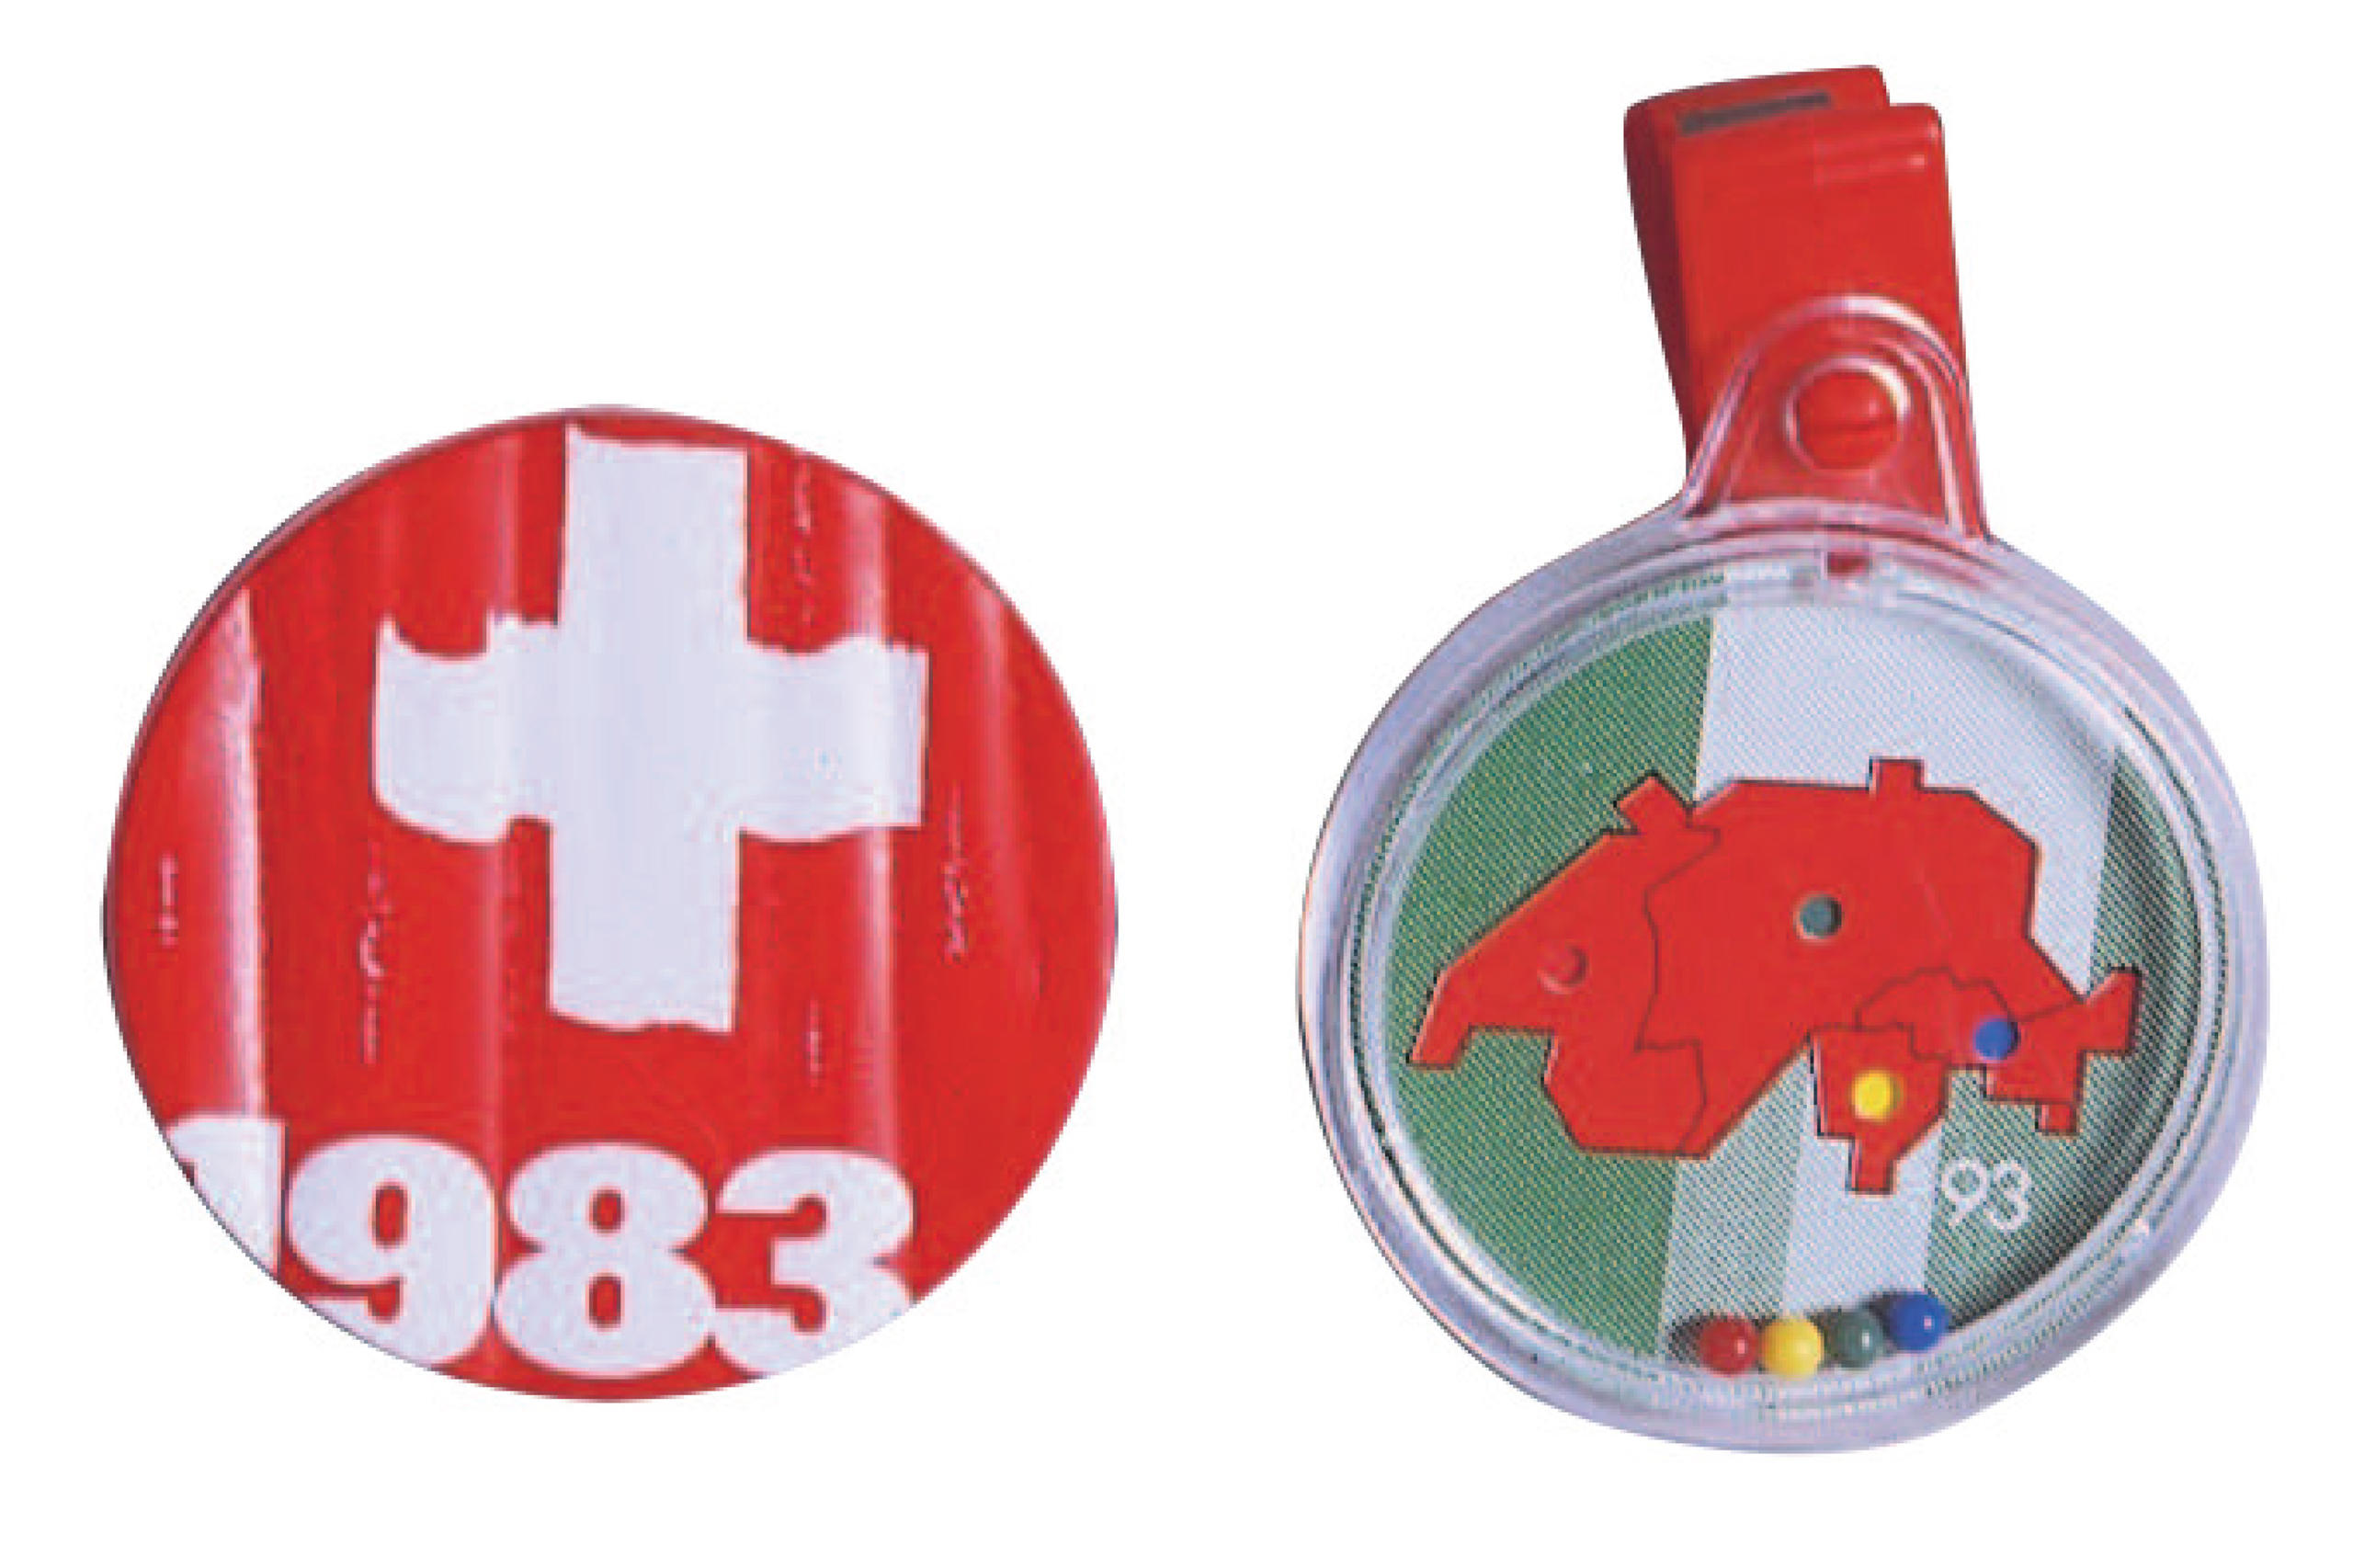 2 distintivi - uno raffigurante la Croce Svizzera e la data 1983, l altro in plastica con la mappa della svizzera